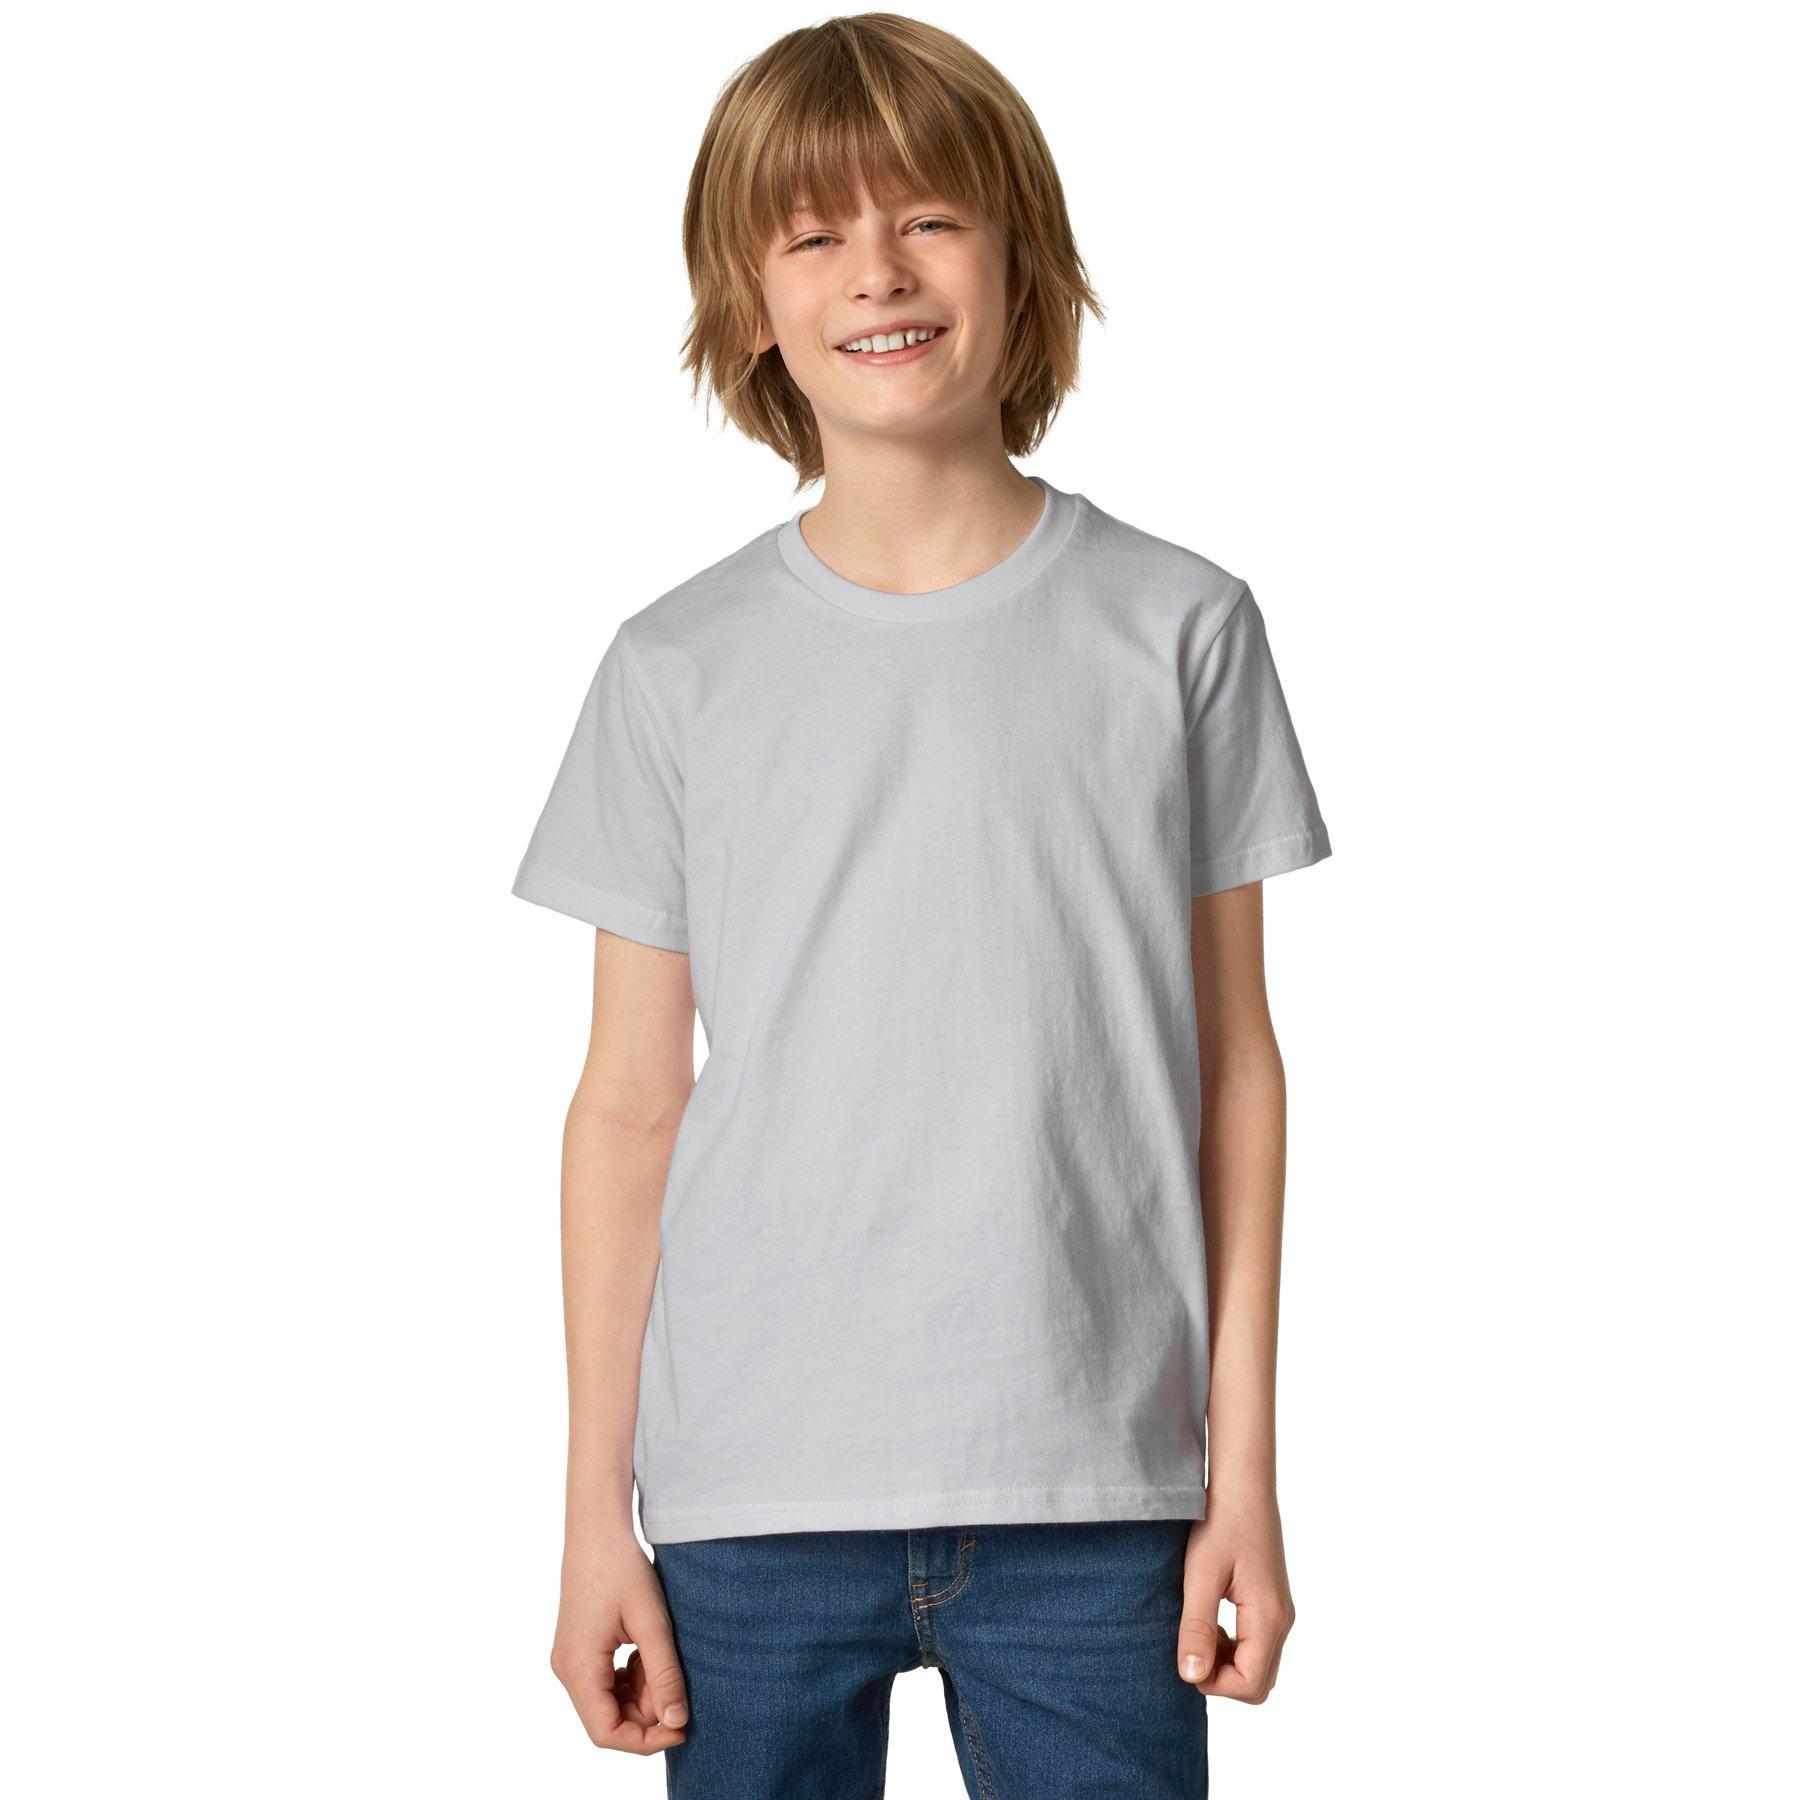 T-shirt Kinder Jungen Perlgrau 128 von Tectake